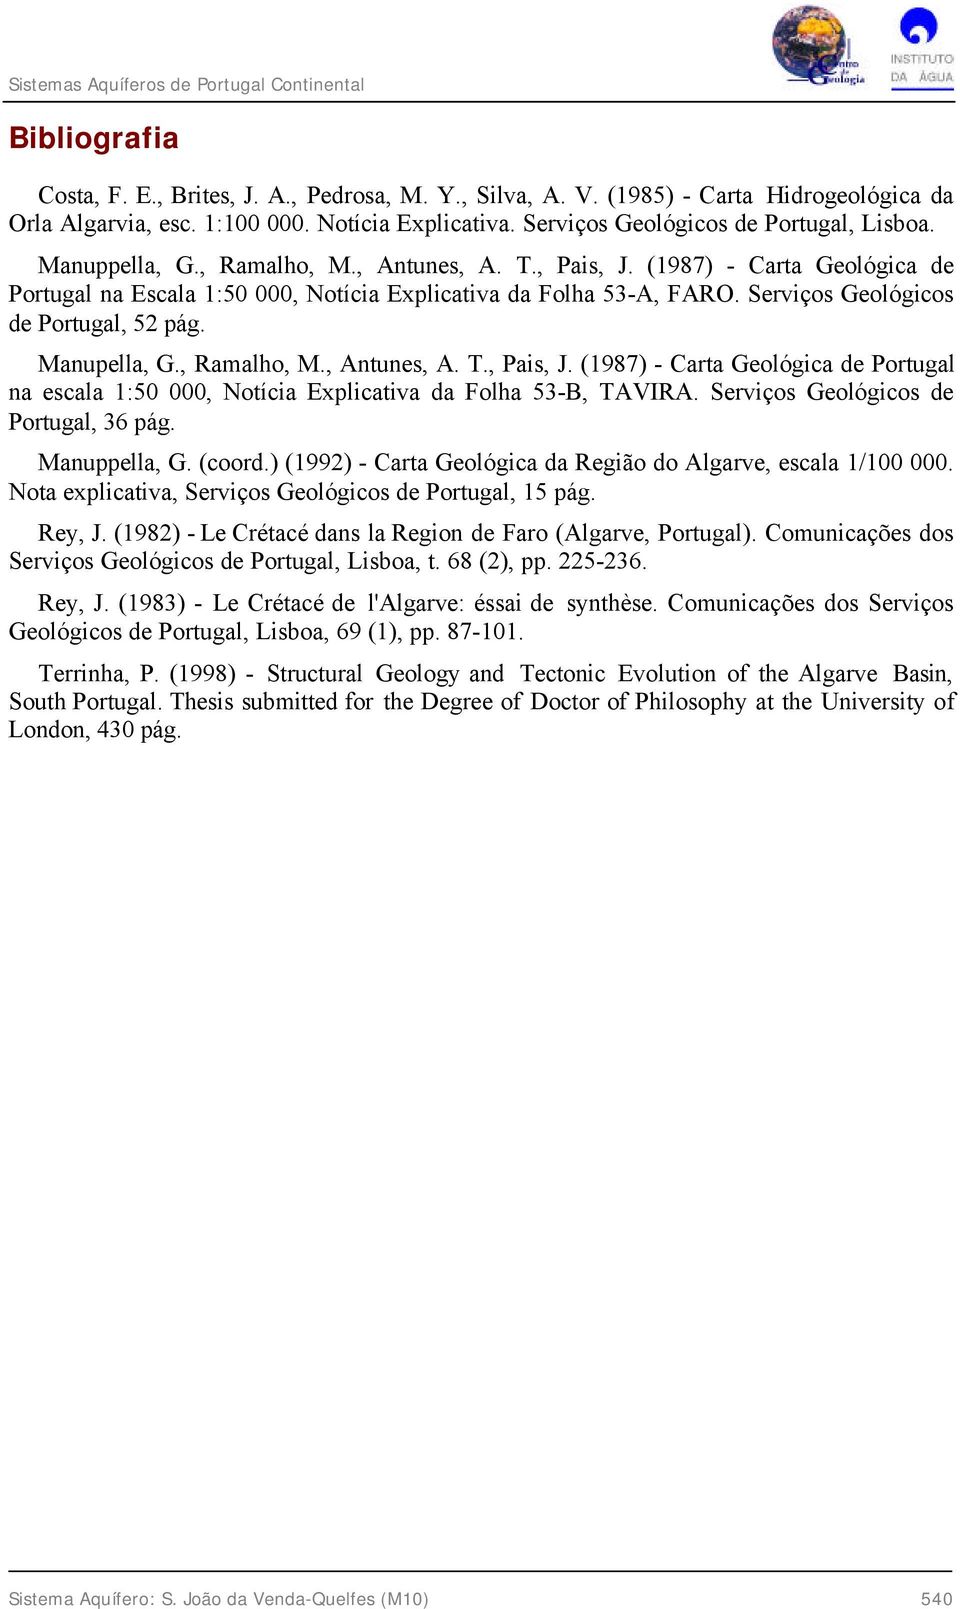 Manupella, G., Ramalho, M., Antunes, A. T., Pais, J. (1987) - Carta Geológica de Portugal na escala 1:50 000, Notícia Explicativa da Folha 53-B, TAVIRA. Serviços Geológicos de Portugal, 36 pág.